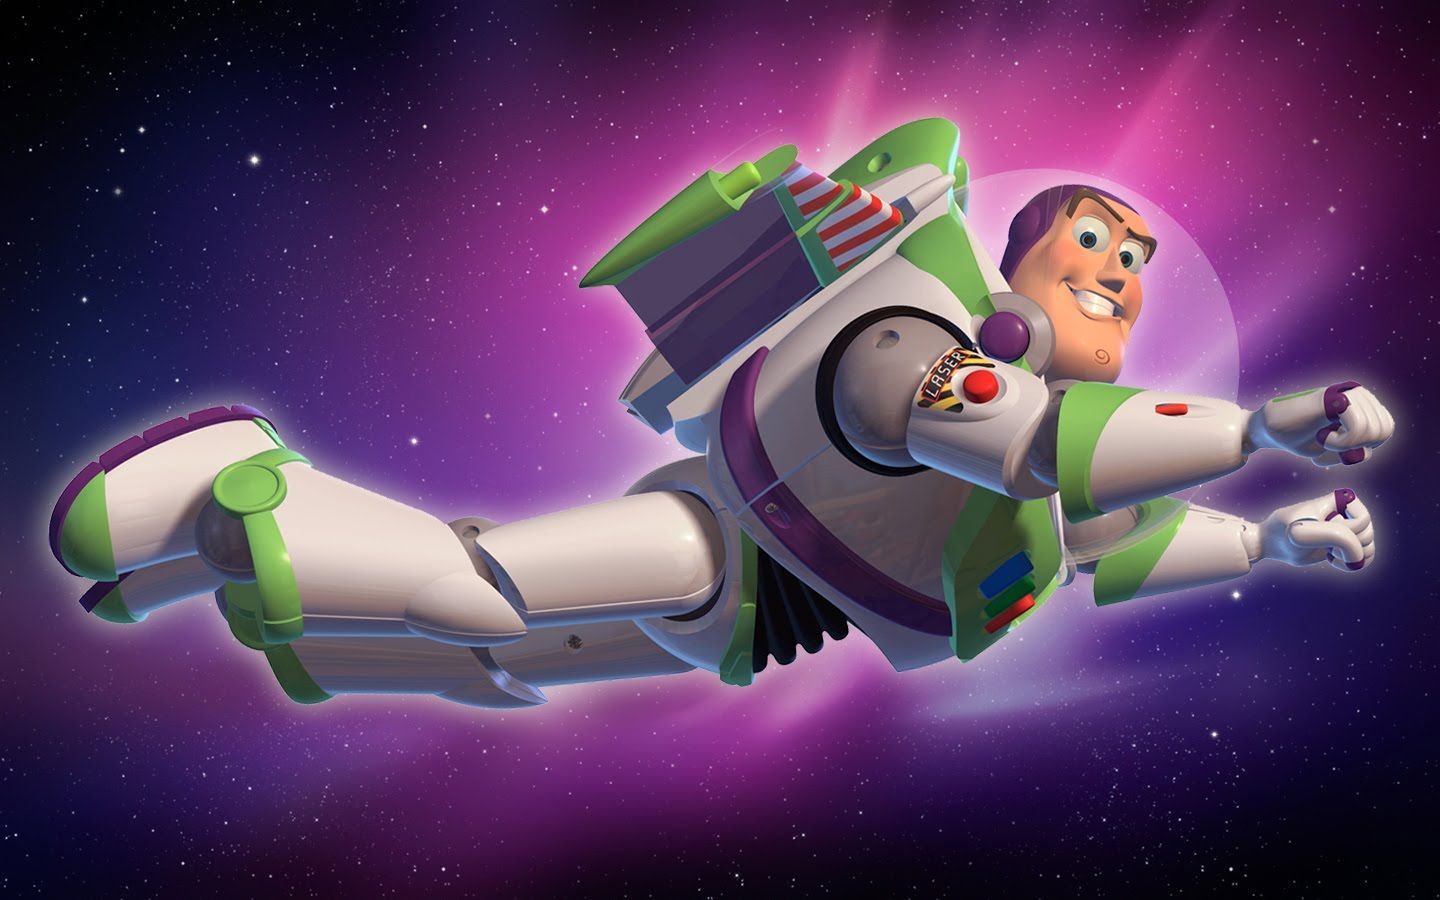 Buzz Lightyear Flying In Space Wallpaper 1440×900. Buzz lightyear, Lightyears, Wallpaper